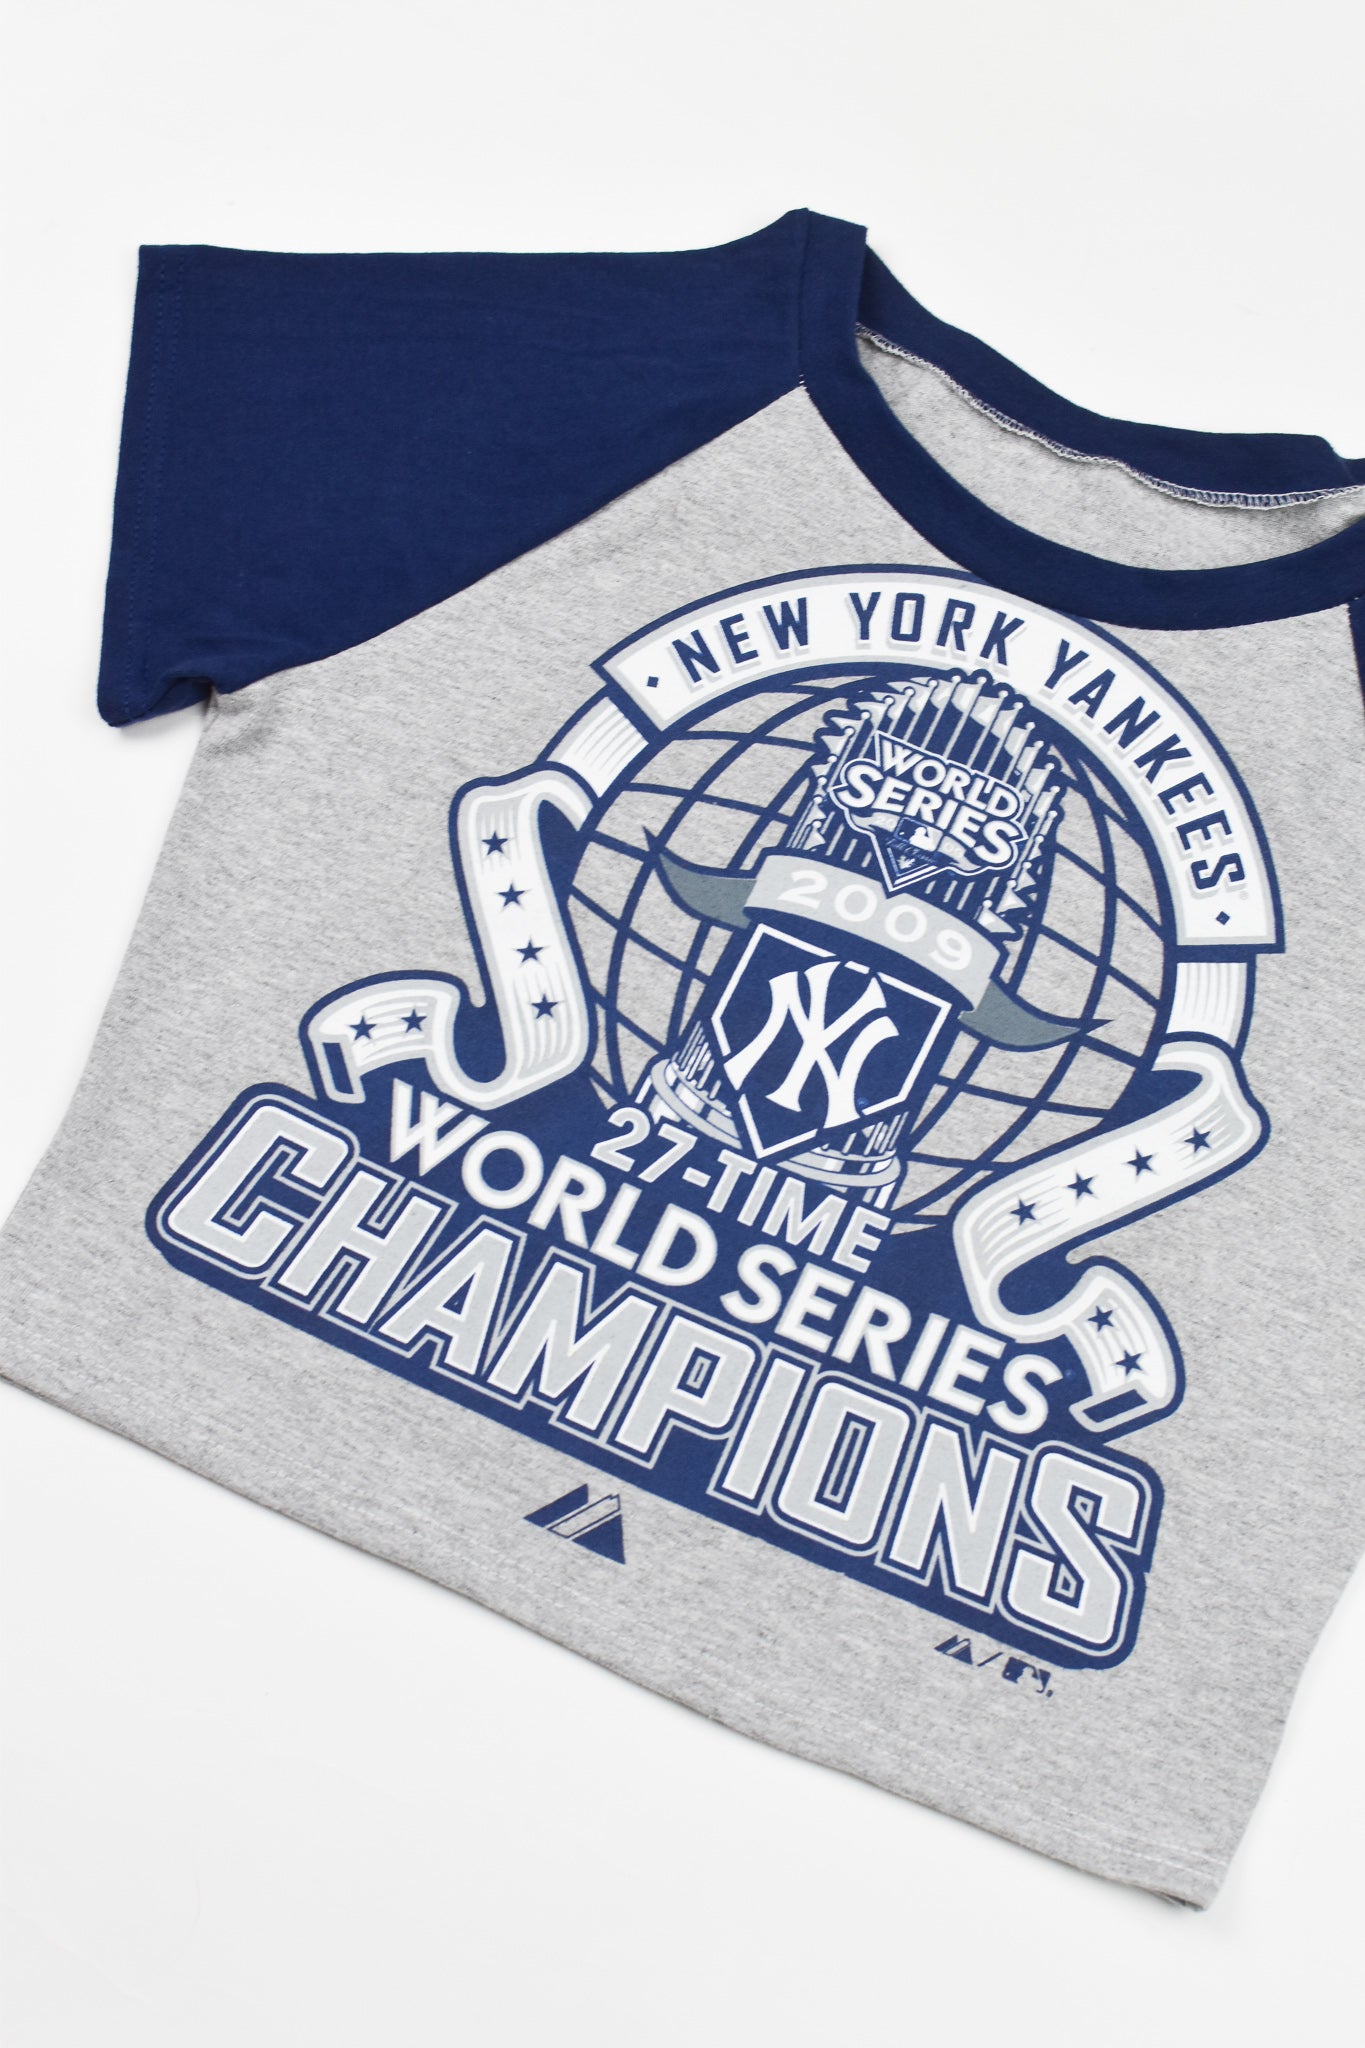 New York Yankees Baby T-Shirt